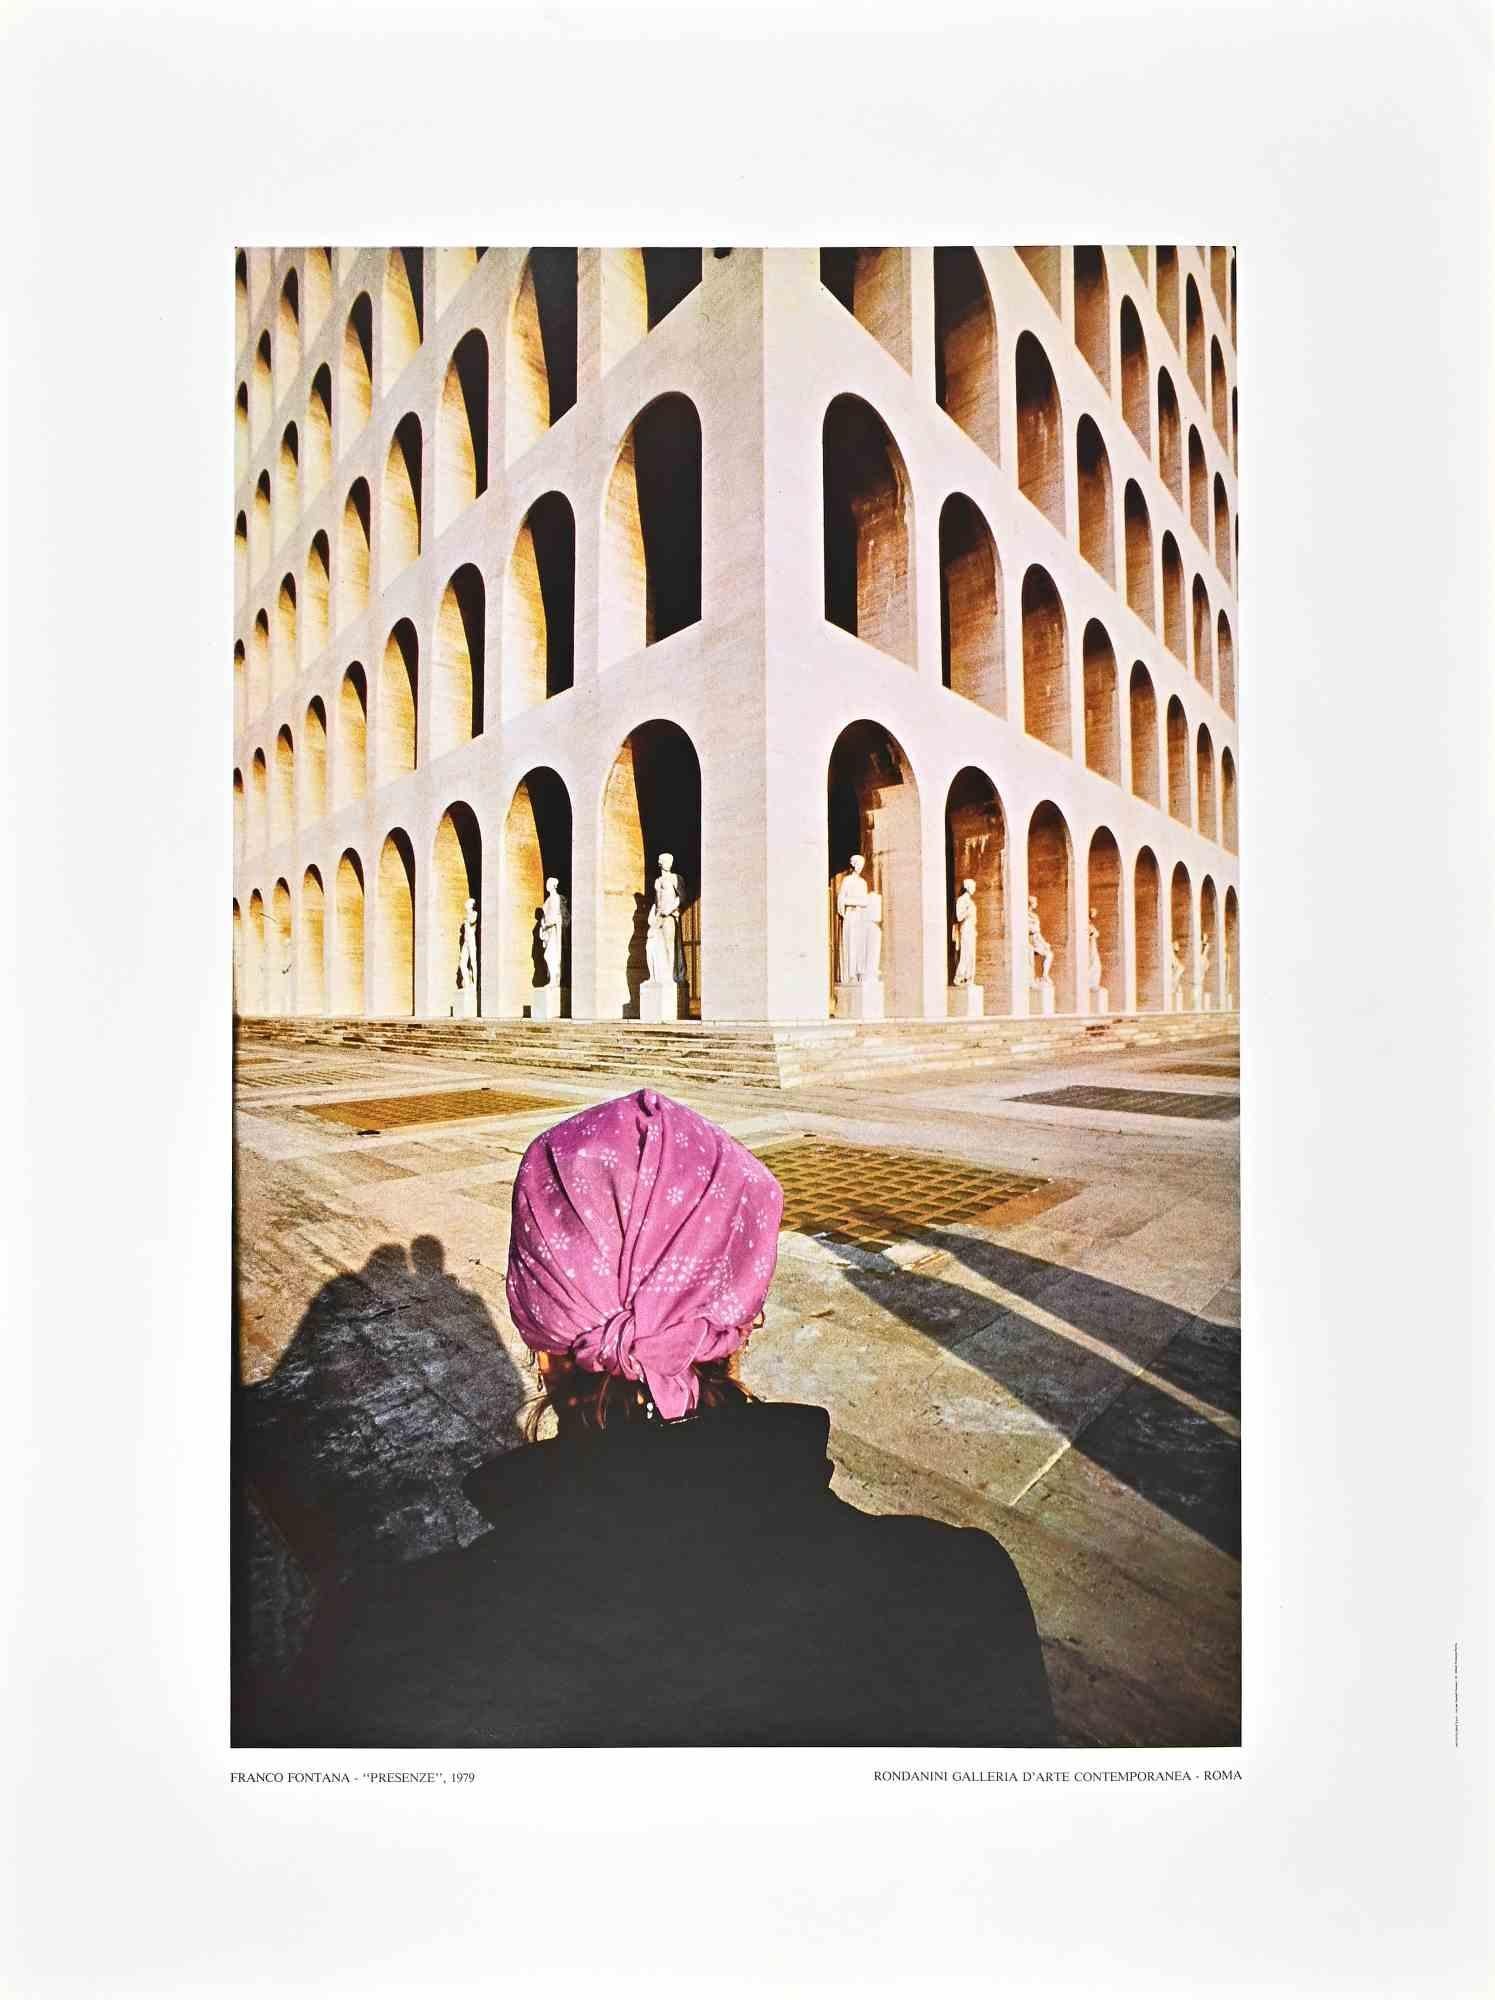 EUR ist ein schönes Offset, das von Franco Fontana realisiert wurde.

Sehr guter Zustand.

Farbiges Poster nach einer Fotografie von Franco Fontana (Modena, 1933), einem der berühmtesten italienischen Fotografen der Gegenwart. Der Titel steht unten.